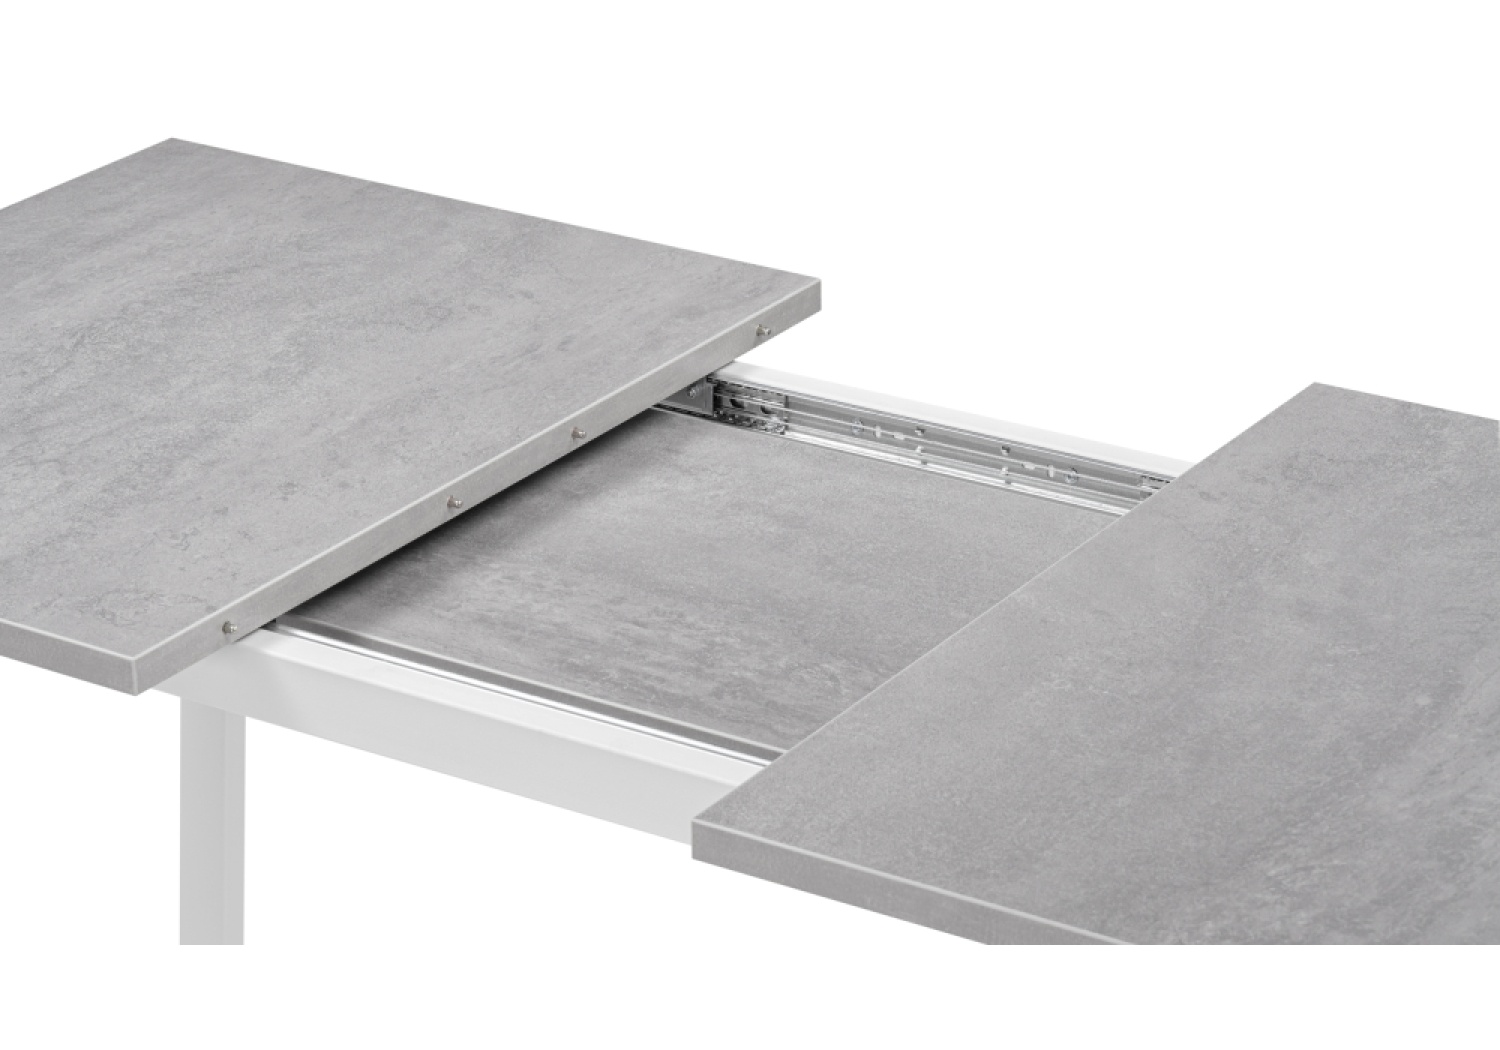 Деревянный стол Лота Лофт 120 25 мм бетон / белый матовый